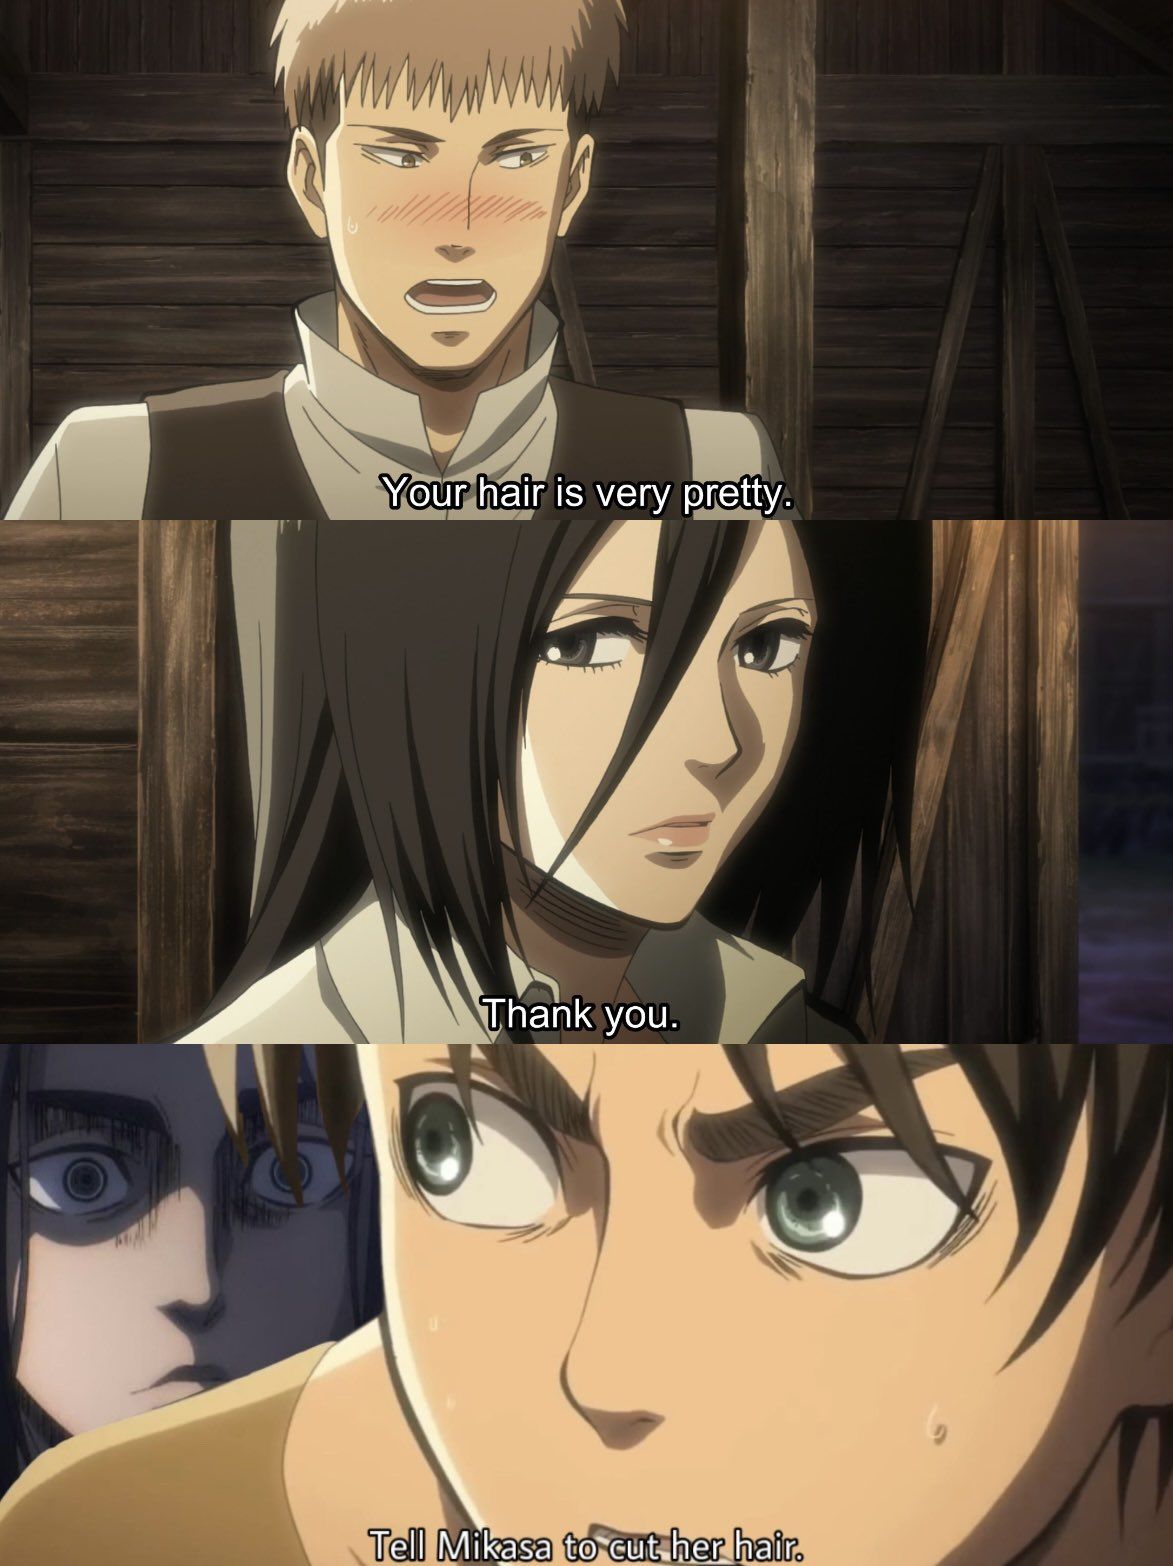 So THAT's why Mikasa cut her hair